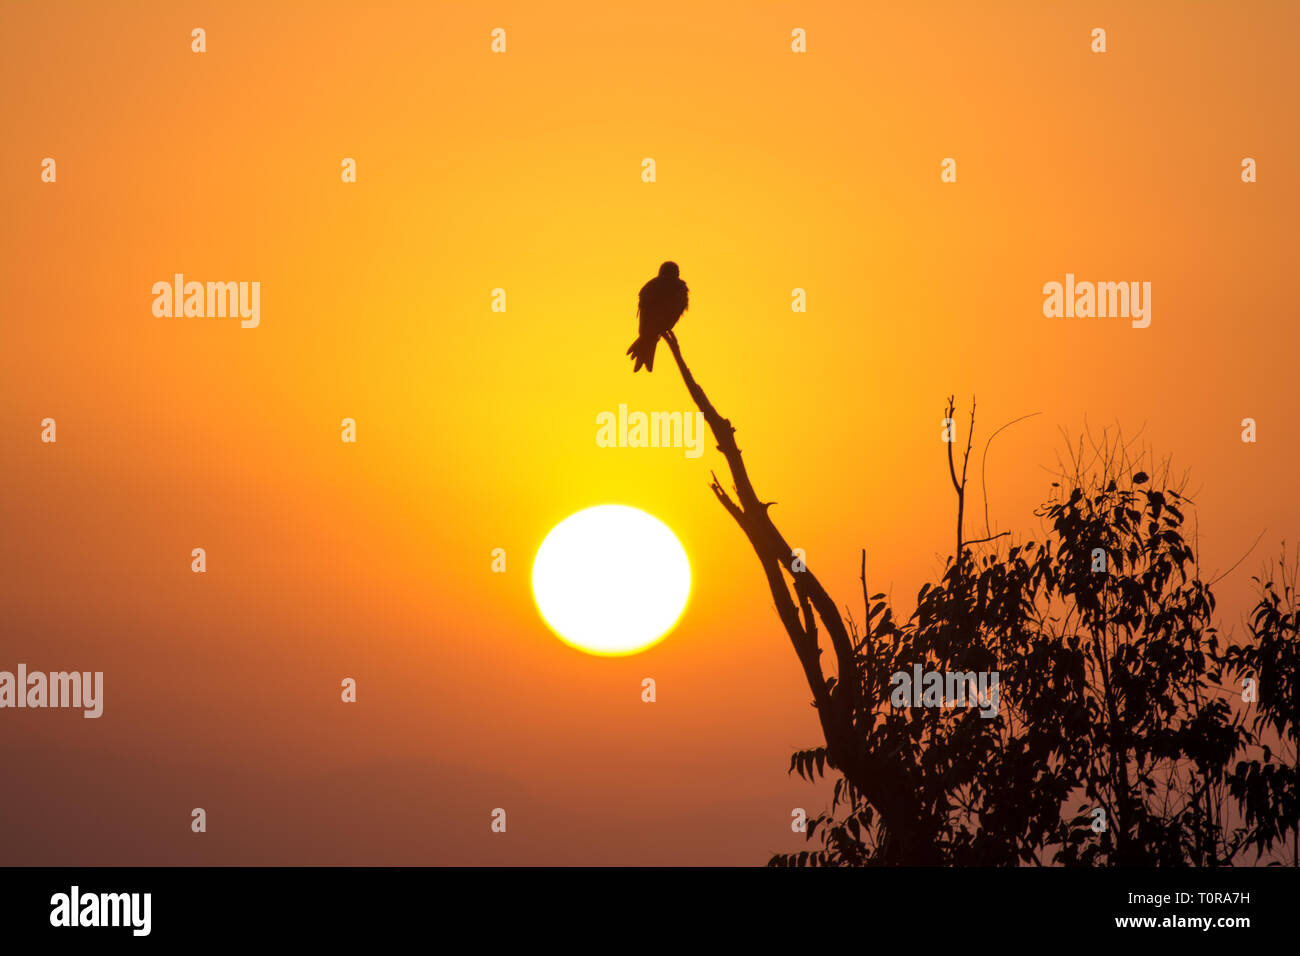 La silhouette d'un aigle perché sur une branche d'arbre Banque D'Images